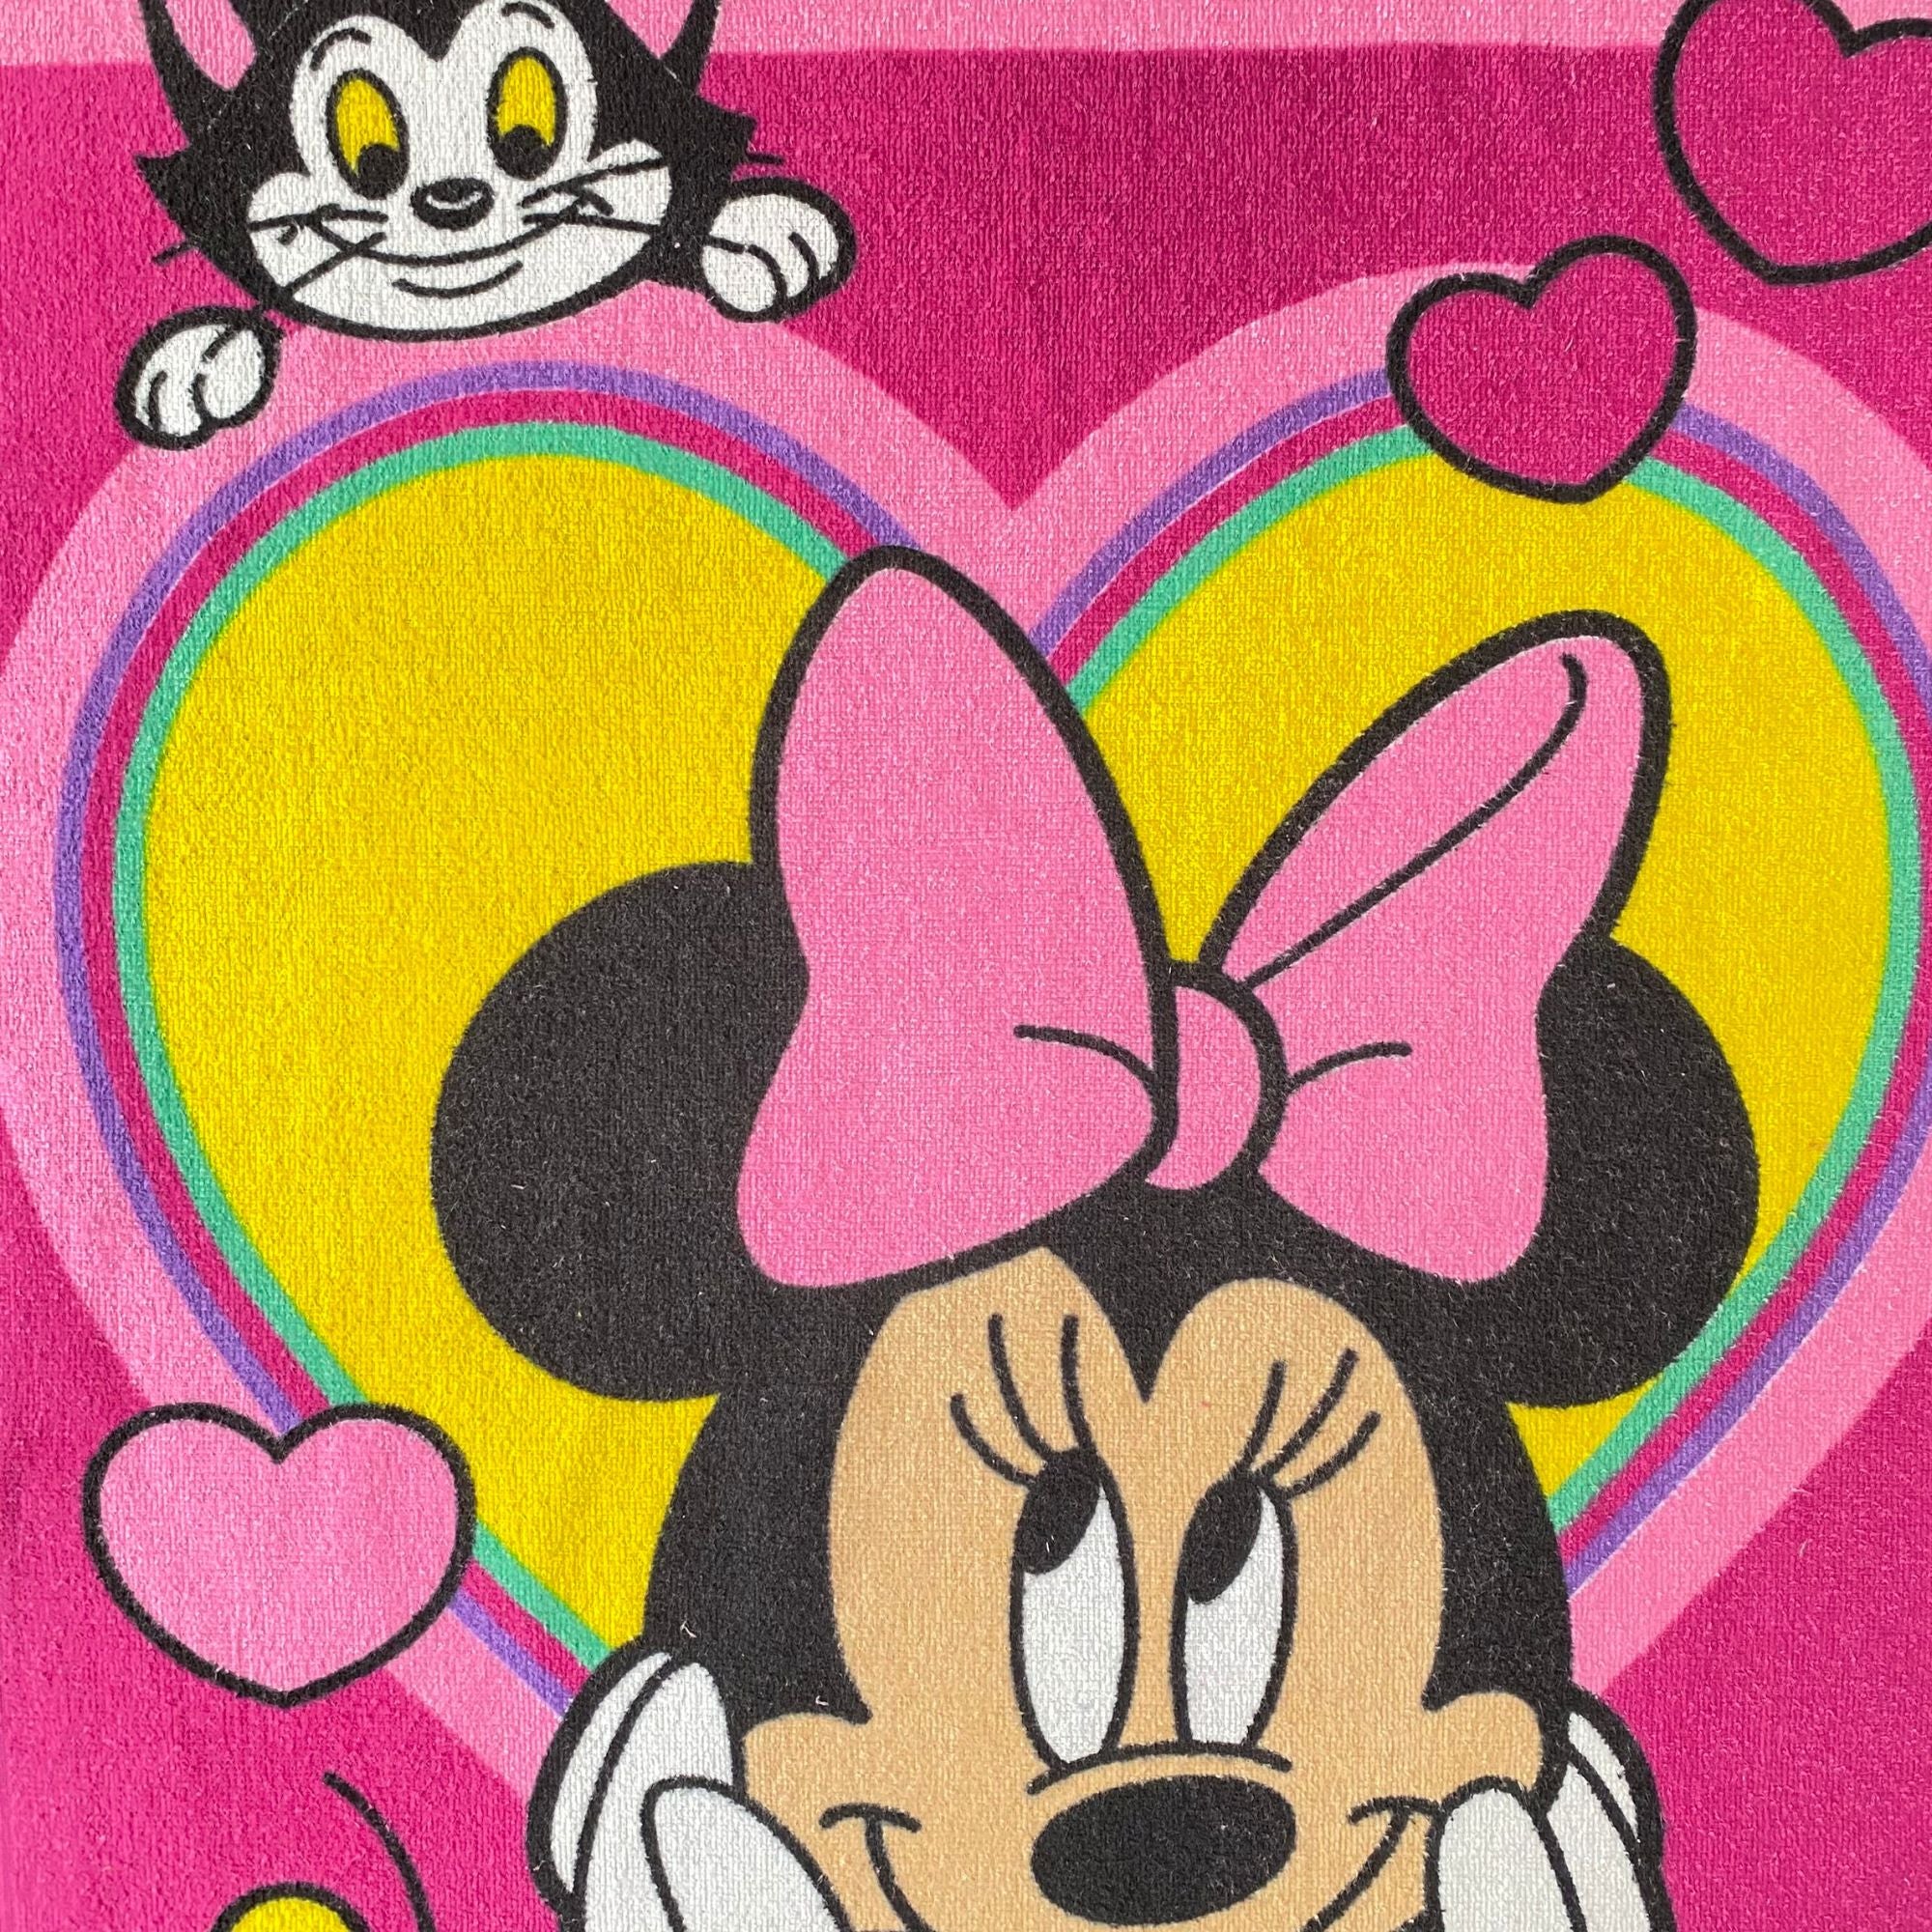 Toalla oficial de Minnie Mouse de 60 x 120 Cms.